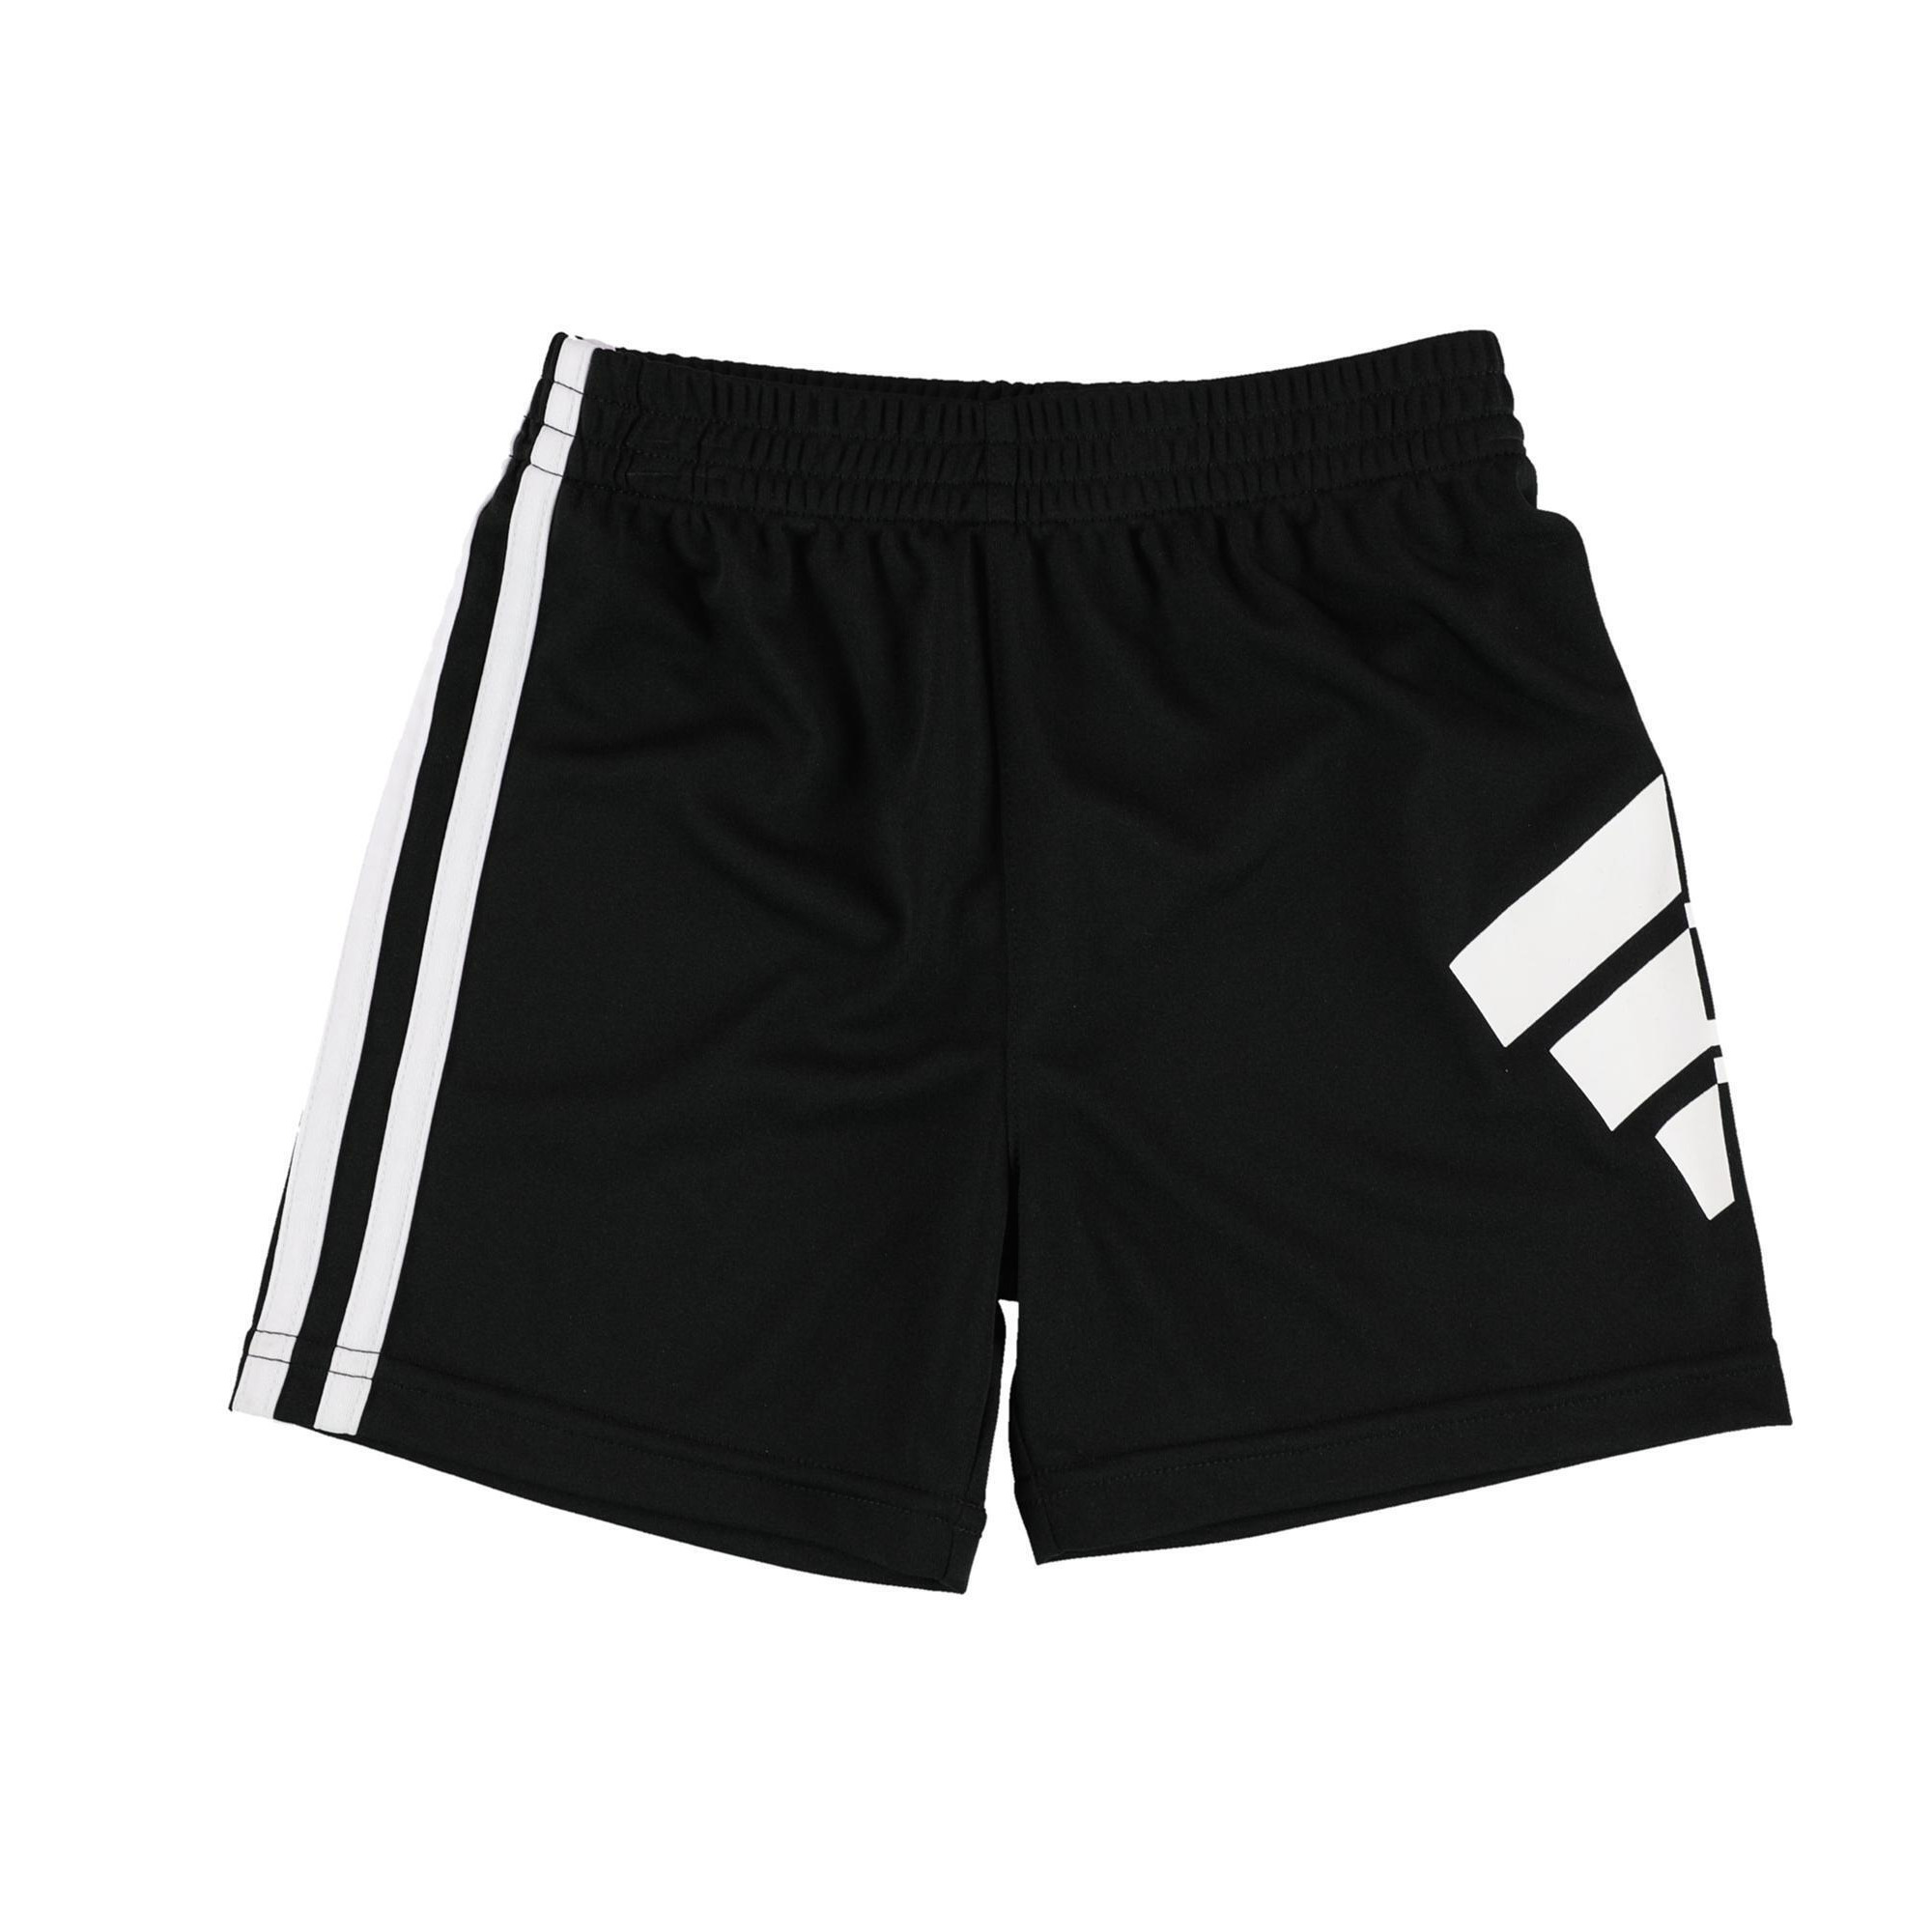 Adidas Boys Logo Graphic Athletic Walking Shorts, Style # AG6287-B alternate image